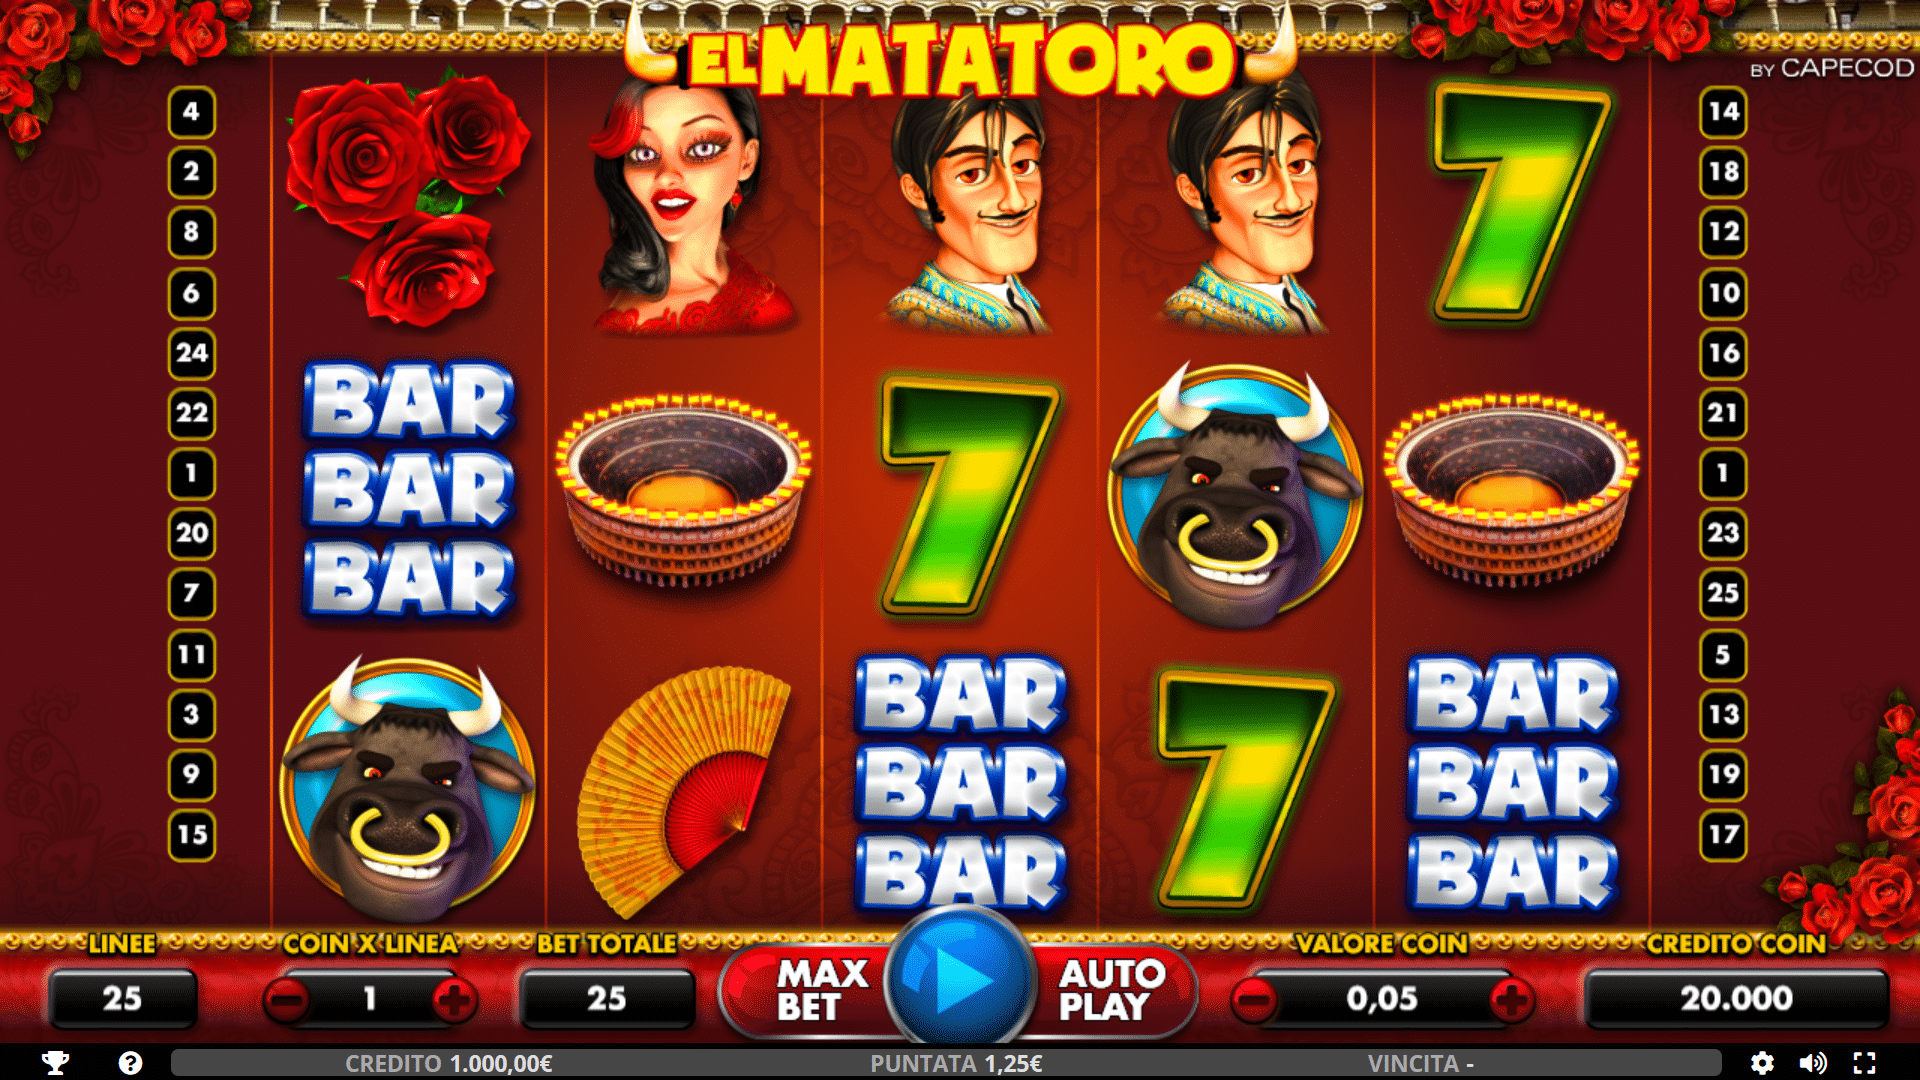 Simboli e Pagamenti della slot gratis El Mata Toro